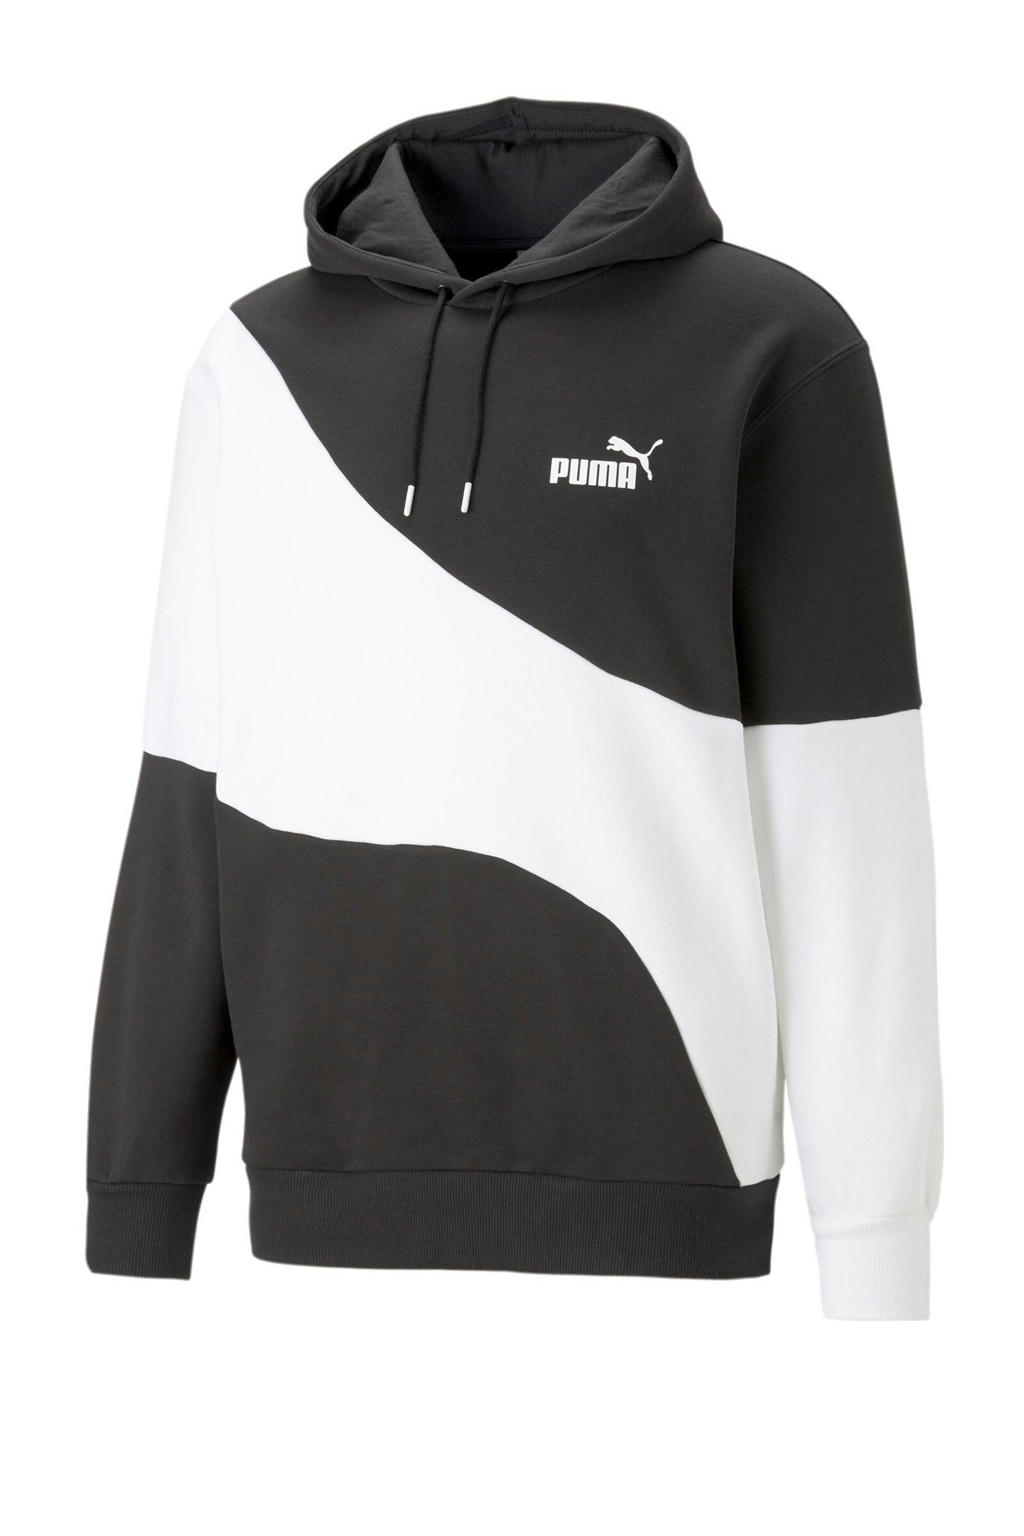 Zwart en witte heren Puma hoodie van katoen met meerkleurige print, lange mouwen en capuchon